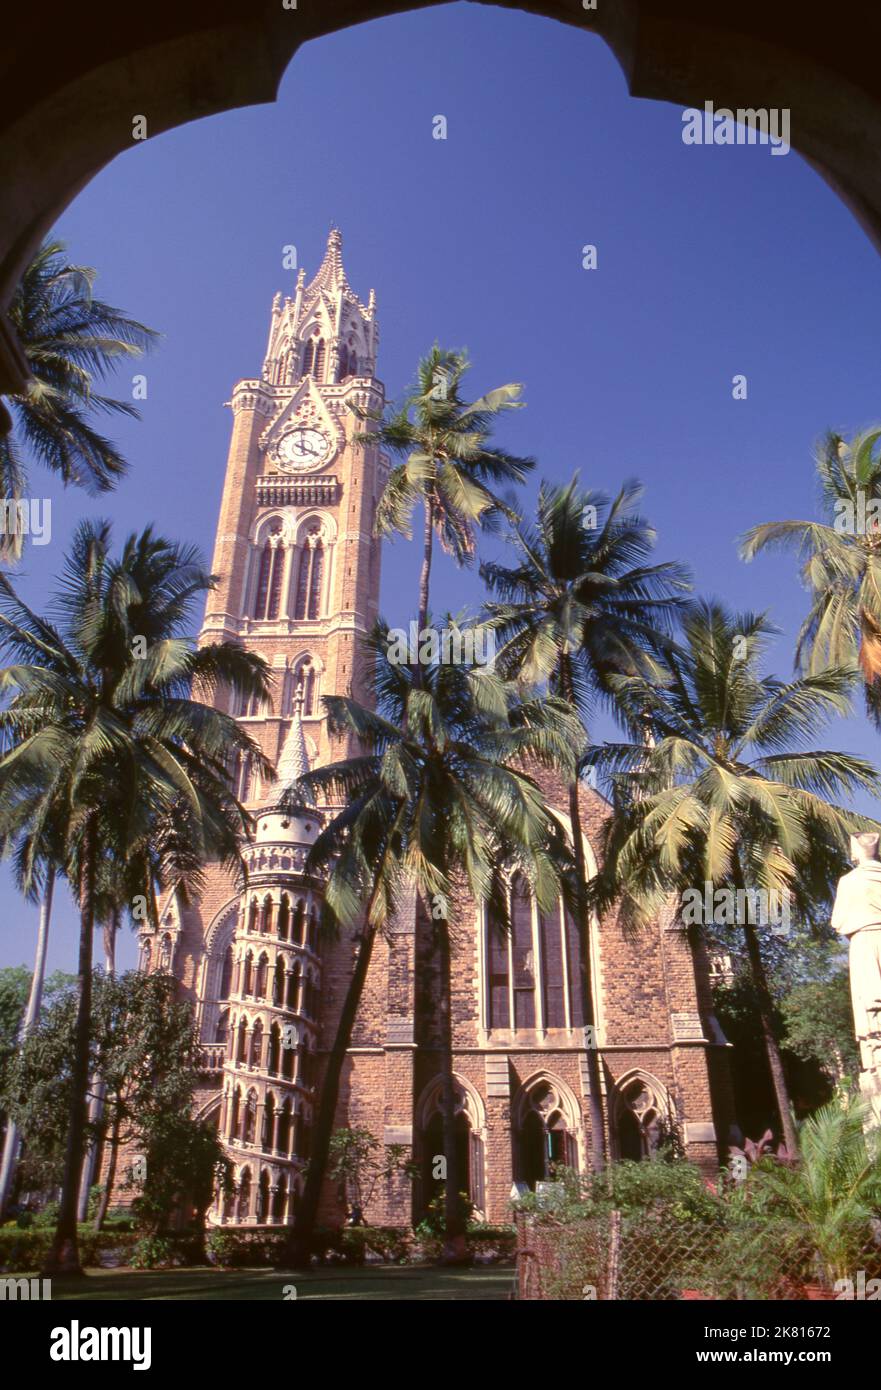 Indien: Der Rajabai Clock Tower und die Universitätsbibliothek, University of Mumbai, Fort Campus, Mumbai, erbaut im sogenannten‚ Bombay Gothic Stil. Die Universität von Bombay, wie sie ursprünglich bekannt war, wurde 1857 gegründet. Der Rajabai Tower und das Bibliotheksgebäude wurden von Sir George Gilbert Scott entworfen und 1878 fertiggestellt. Stockfoto